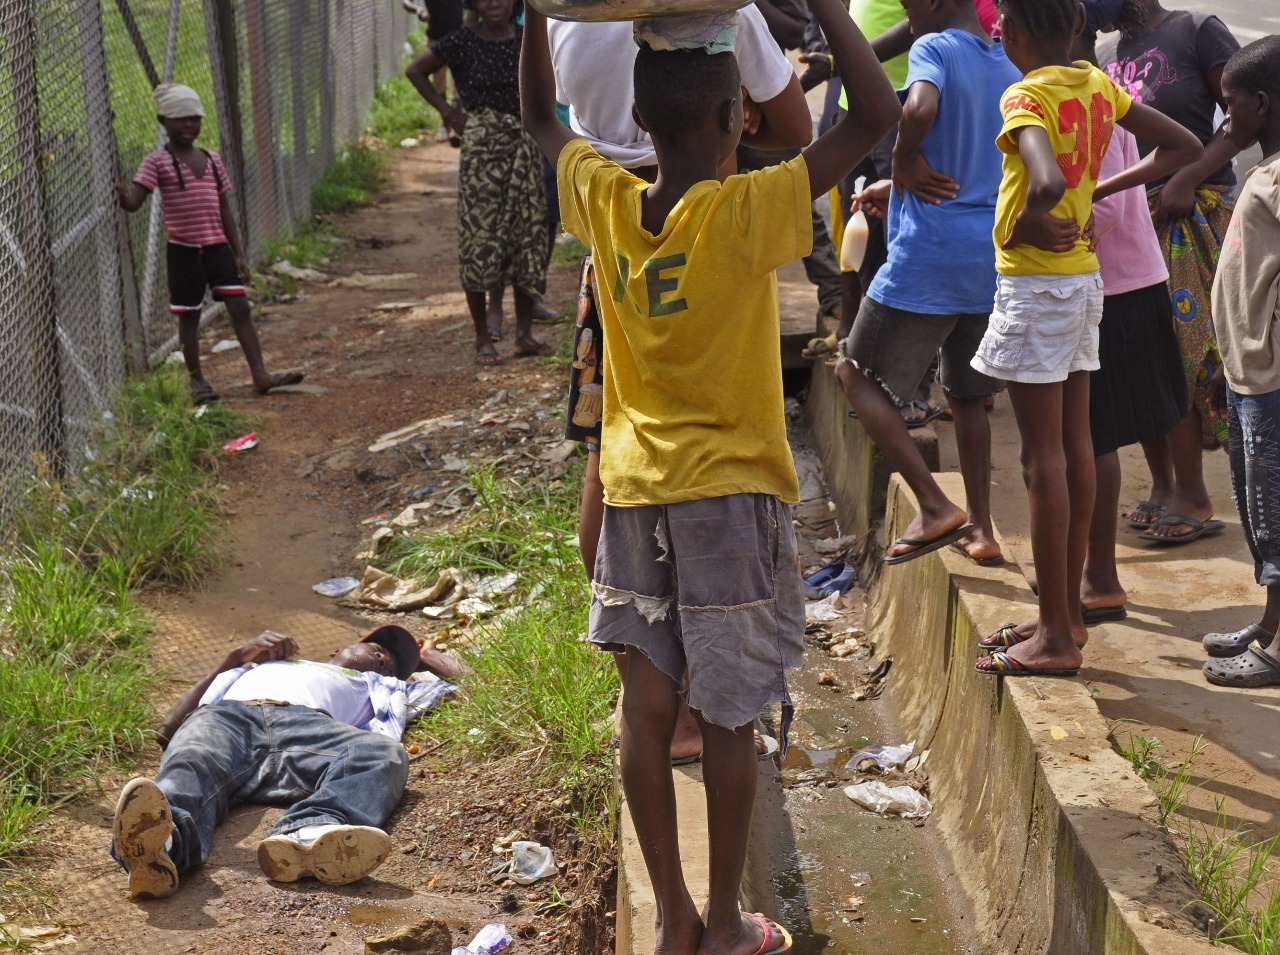 Deti obklopujú človeka, ktorý padol pri chôdzi na zem, podozrivý z nakazenia vírusom Ebola v meste Monrovia.